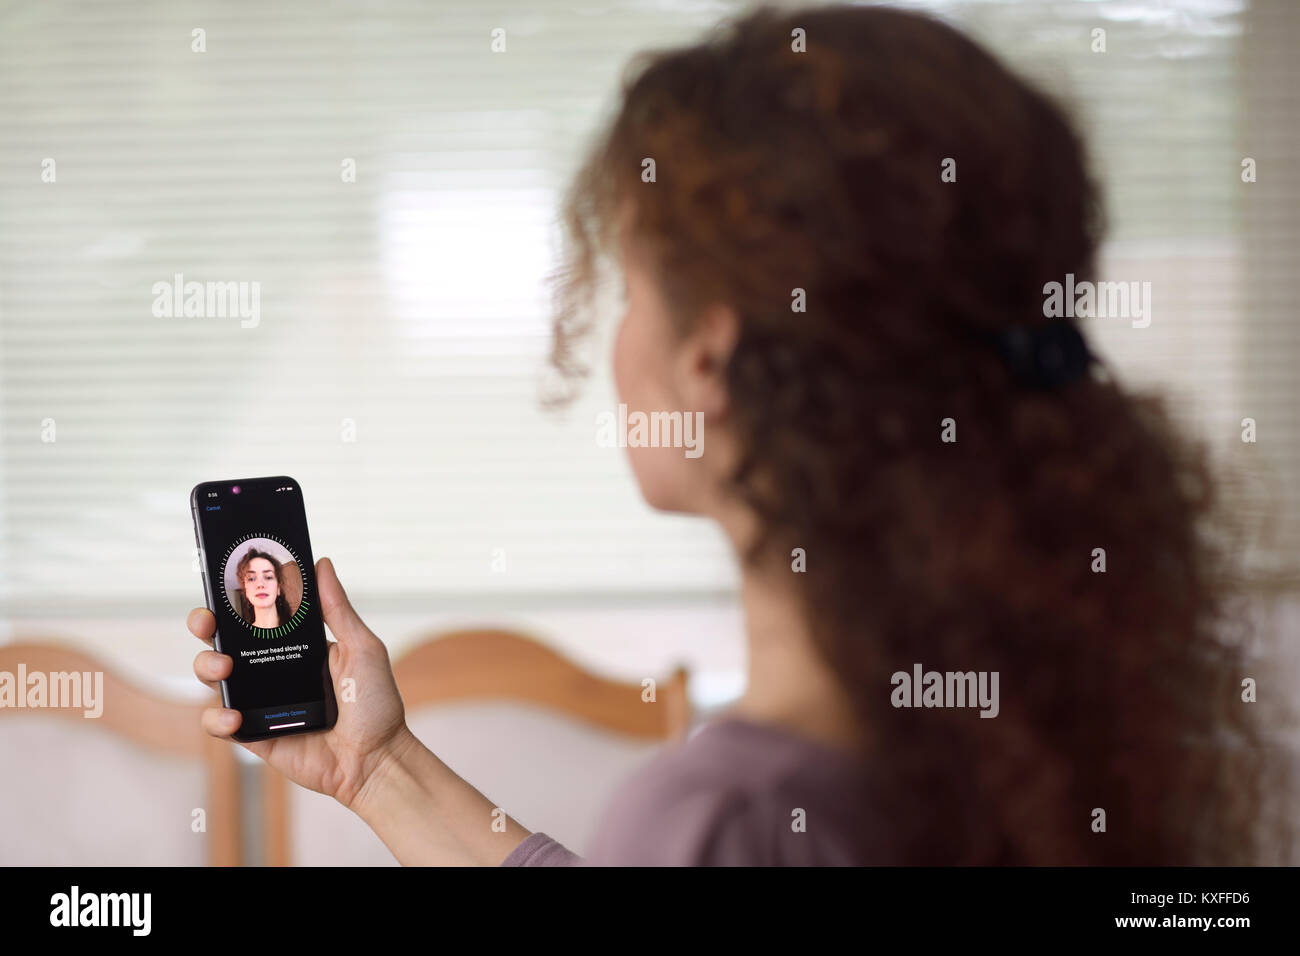 Frau mit Apple iPhone X in ihrer Hand einrichten Face ID, biometrische Authentifizierung, durch ihr Gesicht Scannen mit einer neuen Tiefe sensing Kamera aus verschiedenen Stockfoto